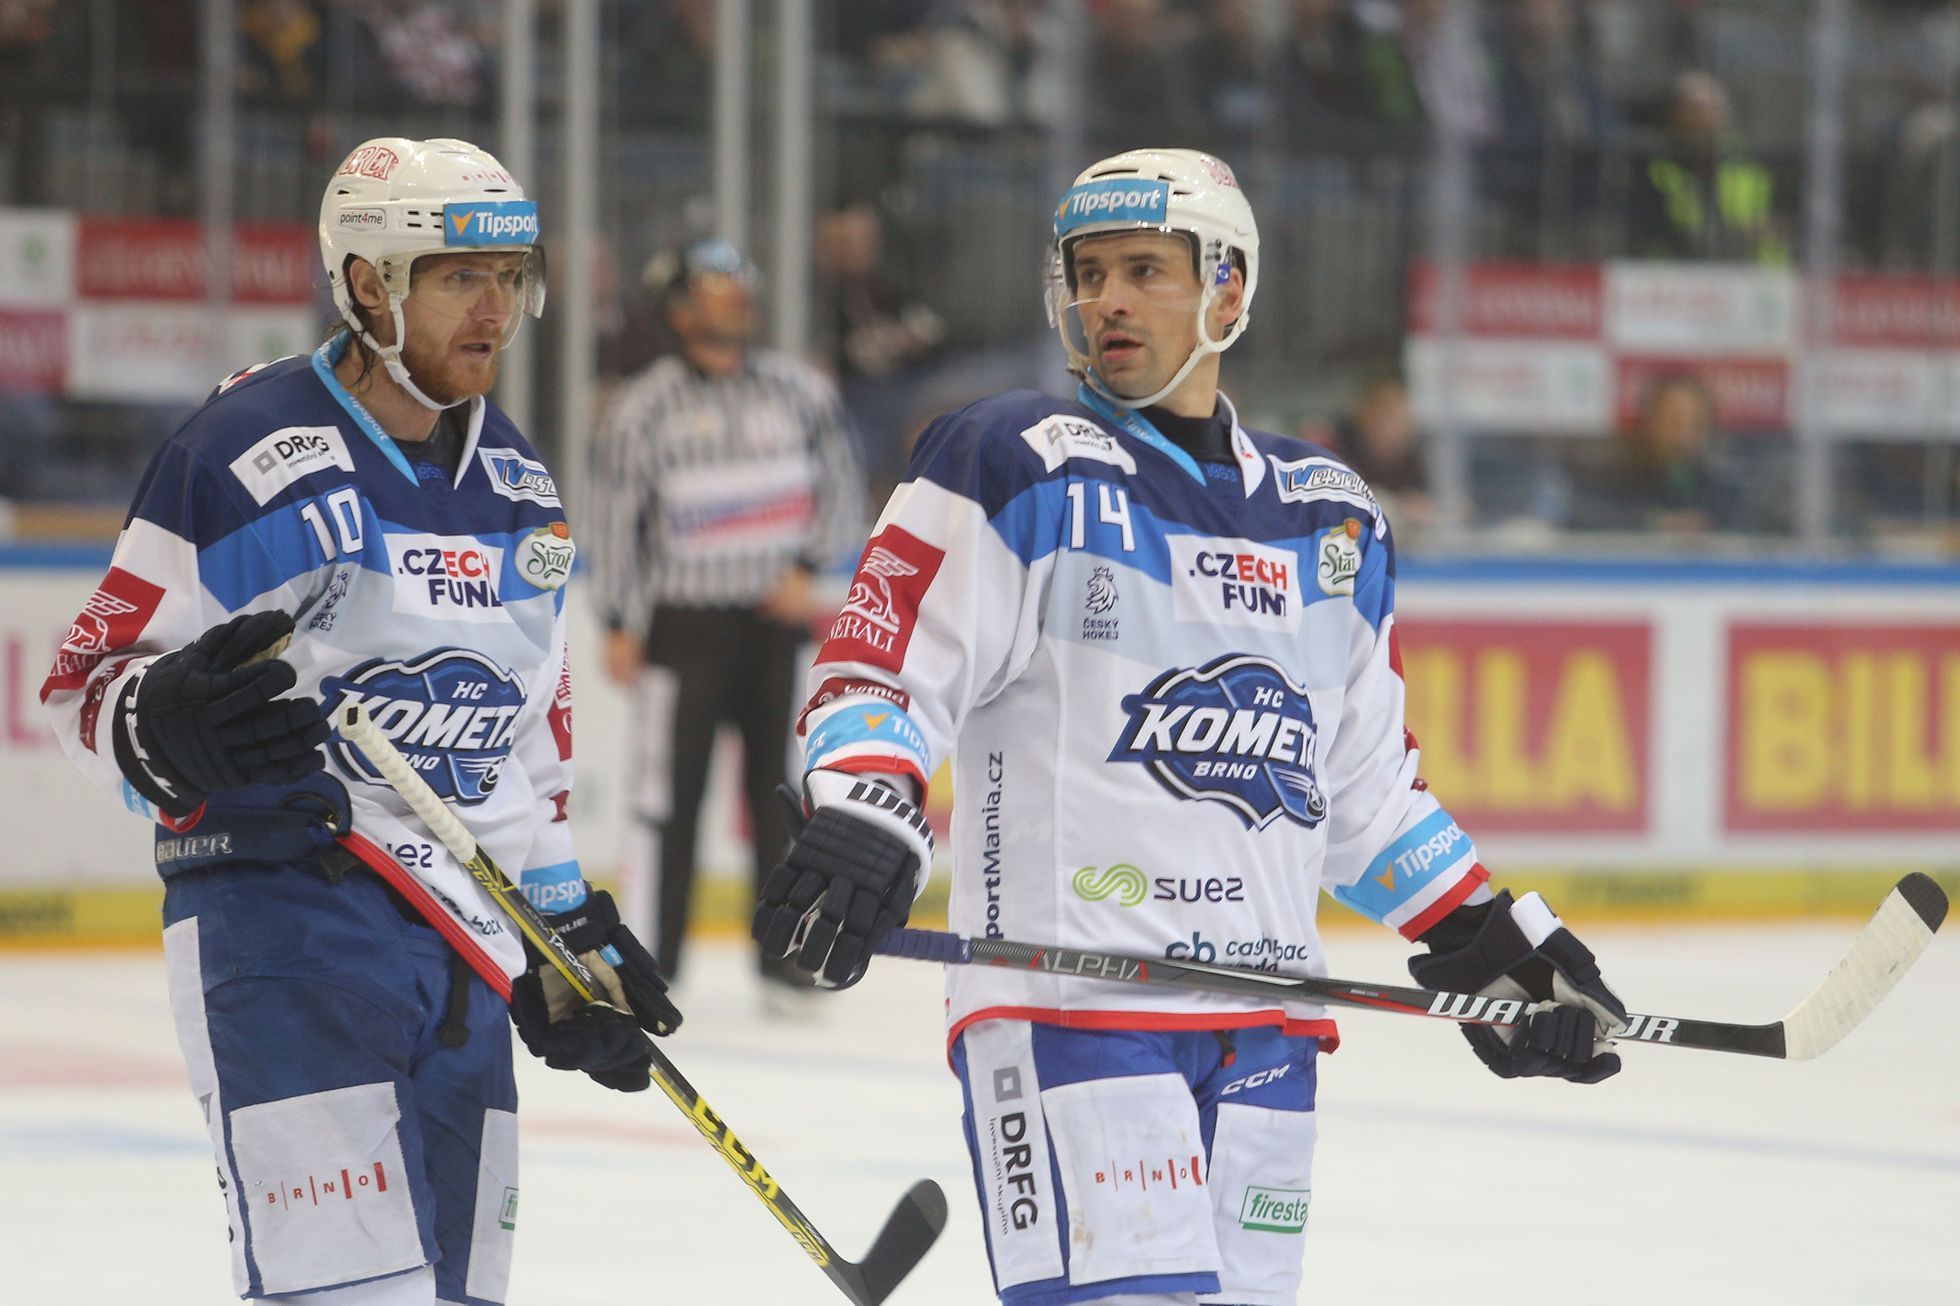 38. kolo hokejové extraligy 2018/19, Sparta - Kometa: Martin Erat (vlevo) a Tomáš Plekanec